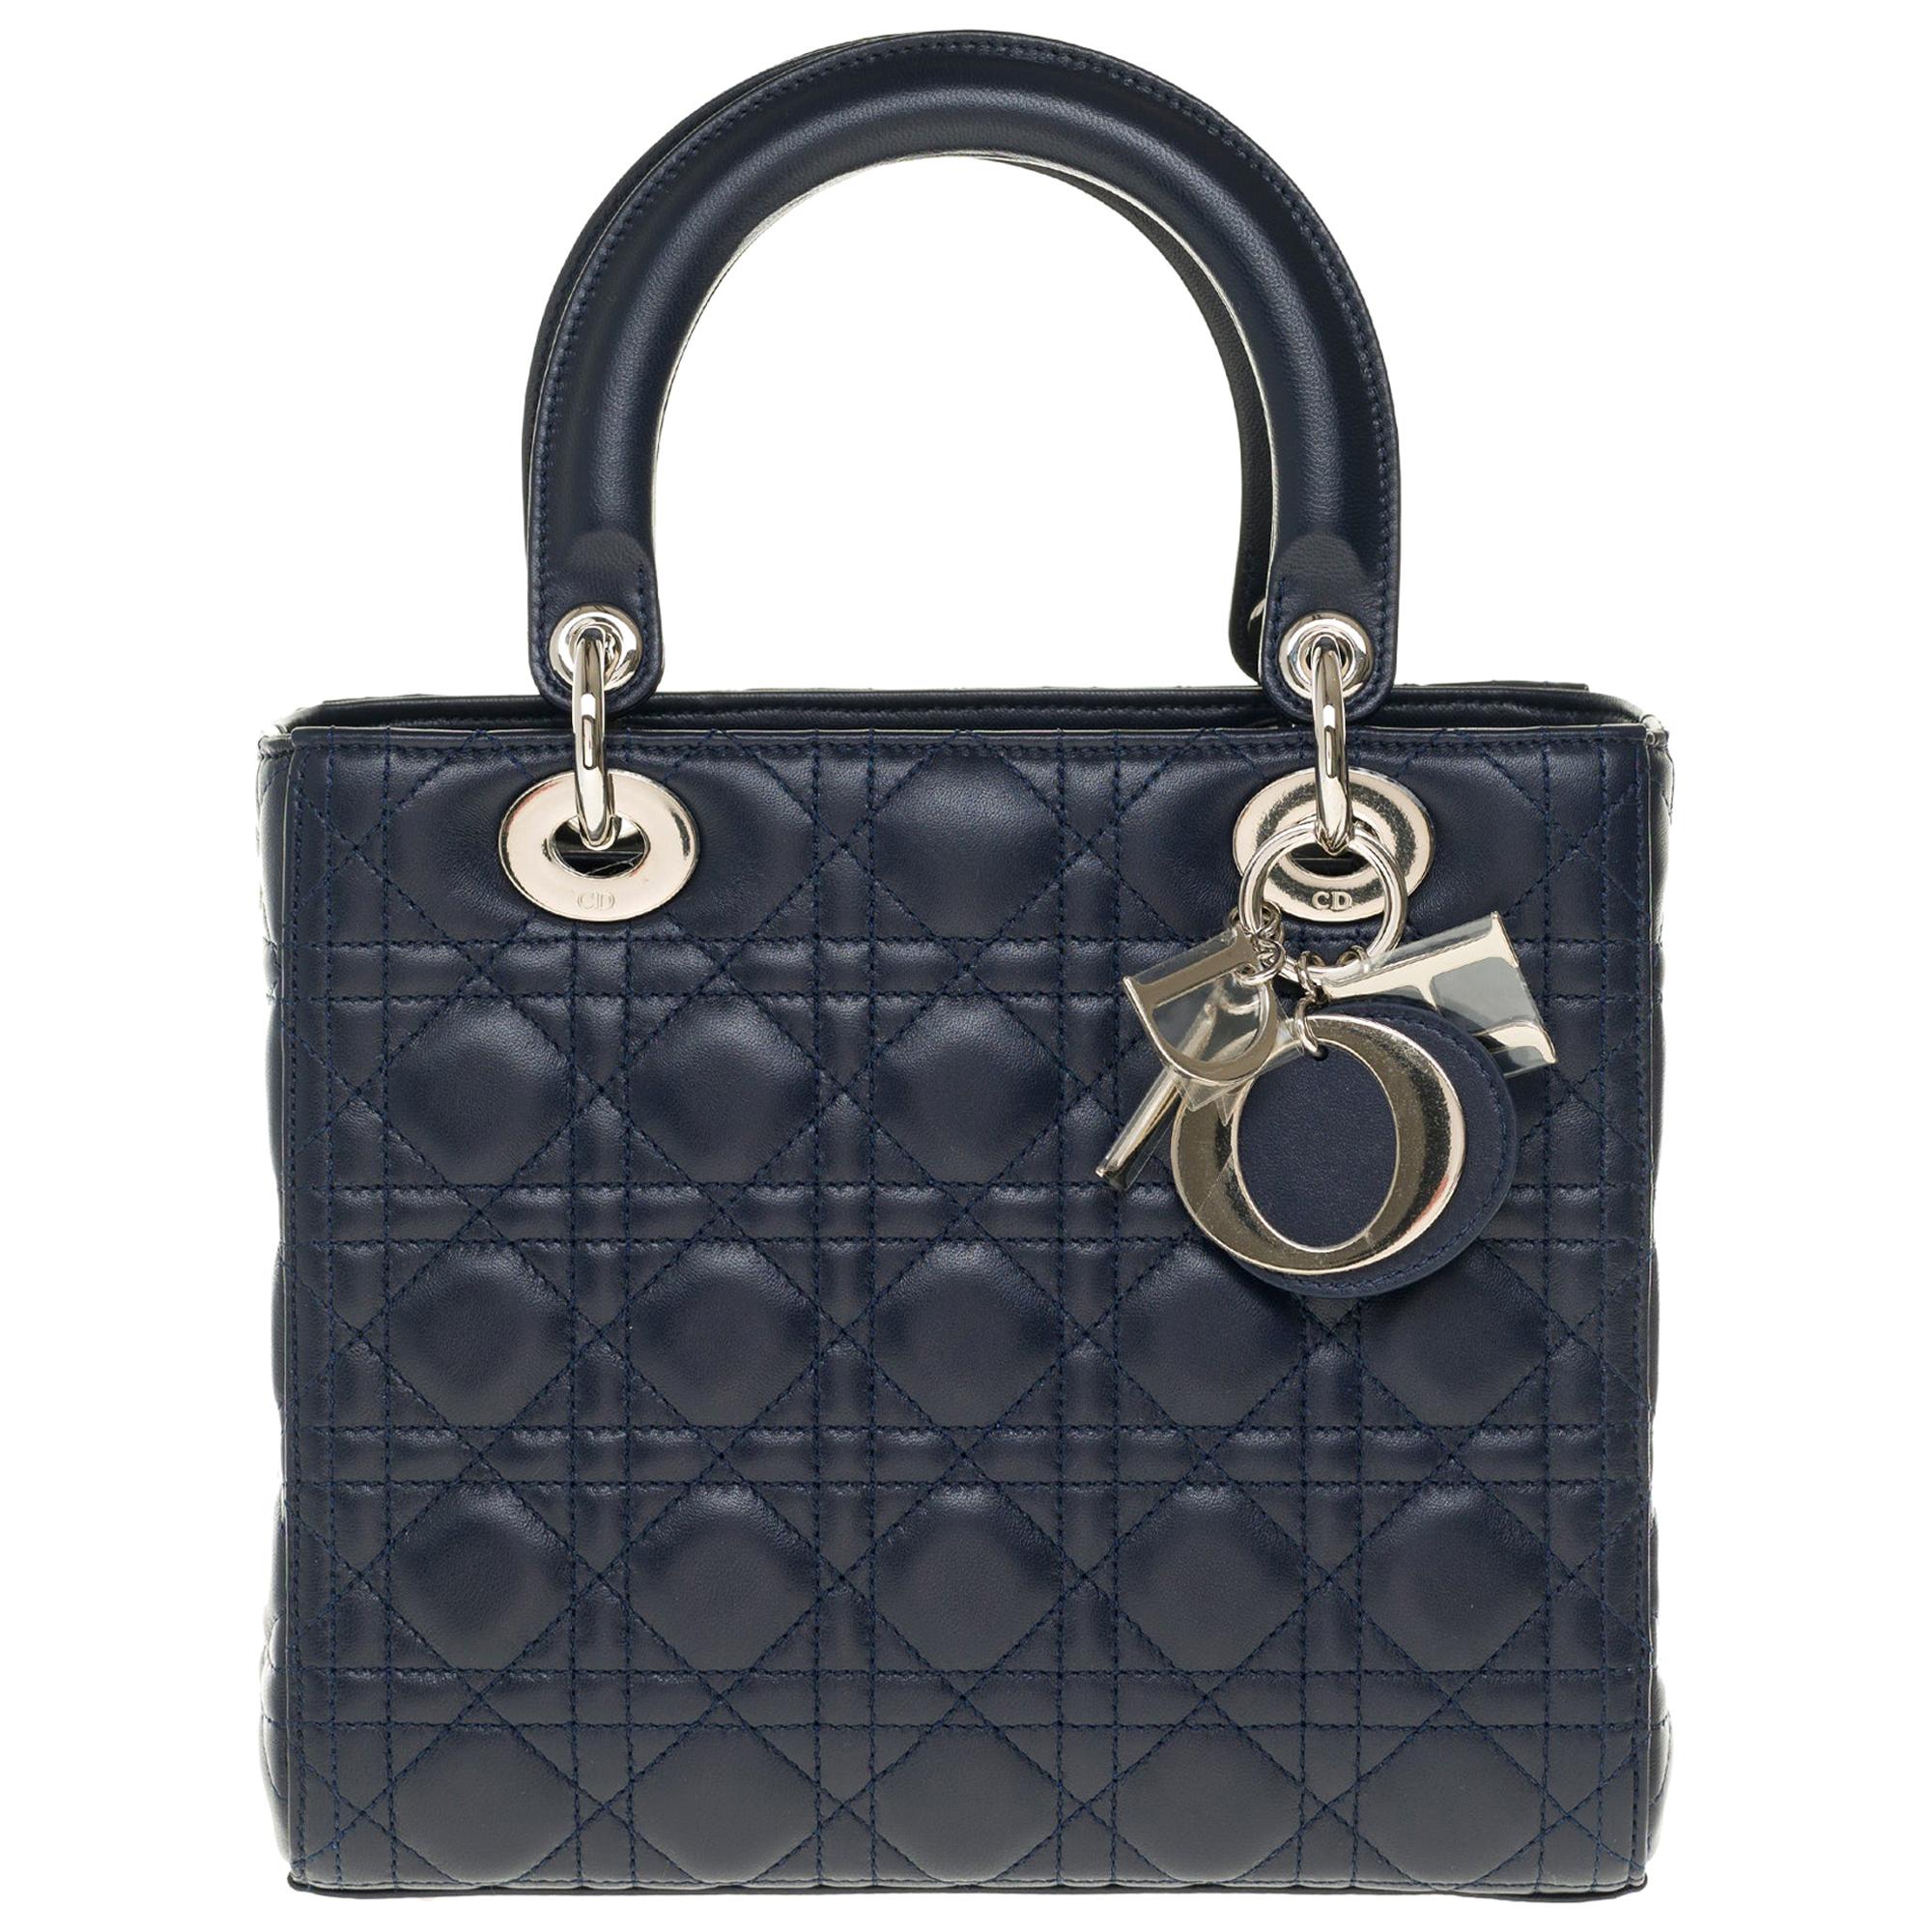  Christian Dior Lady Dior MM (Medium size) handbag in black cannage leather, SHW